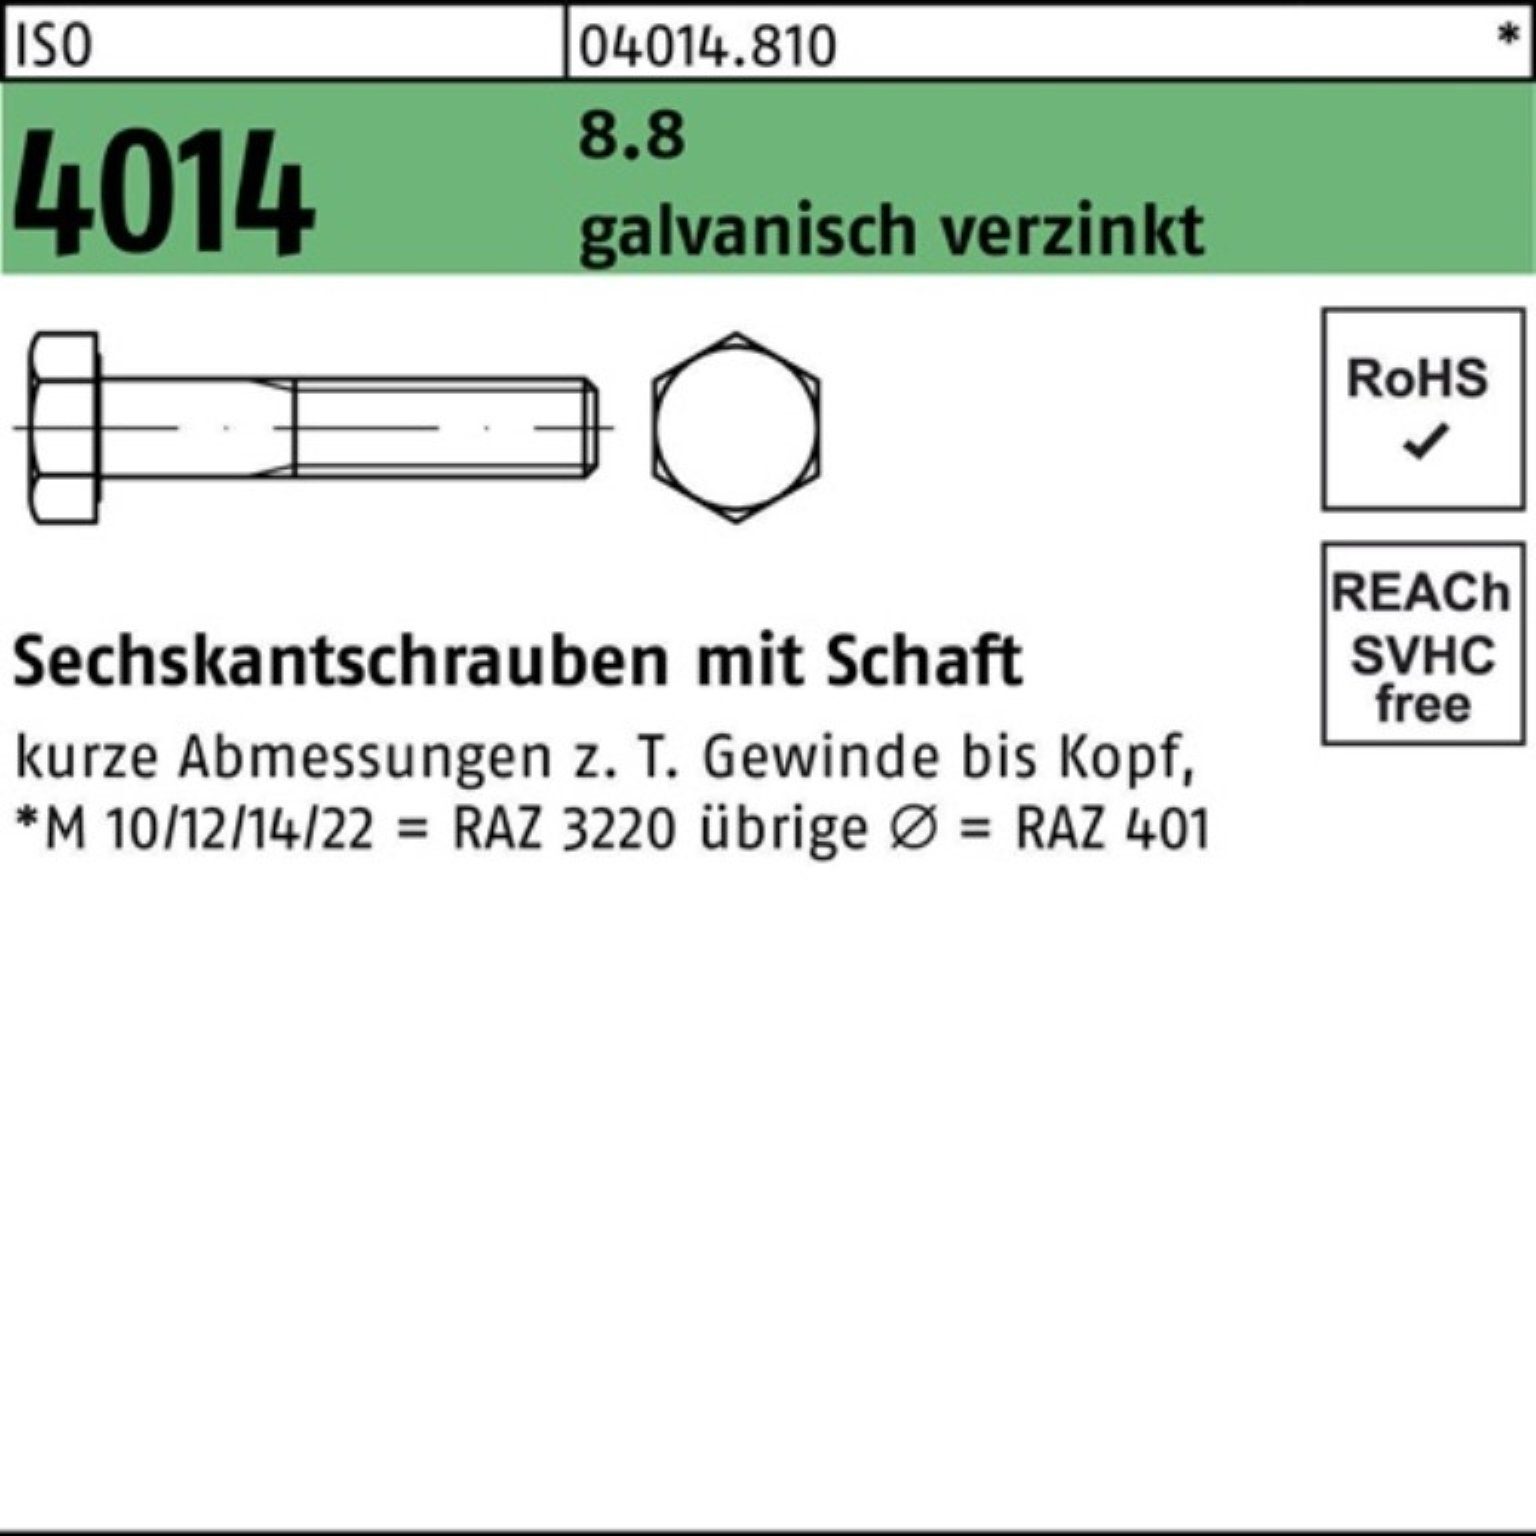 Bufab Sechskantschraube 100er Pack Sechskantschraube 4014 ISO galv.verz. 1 8.8 130 Schaft M30x